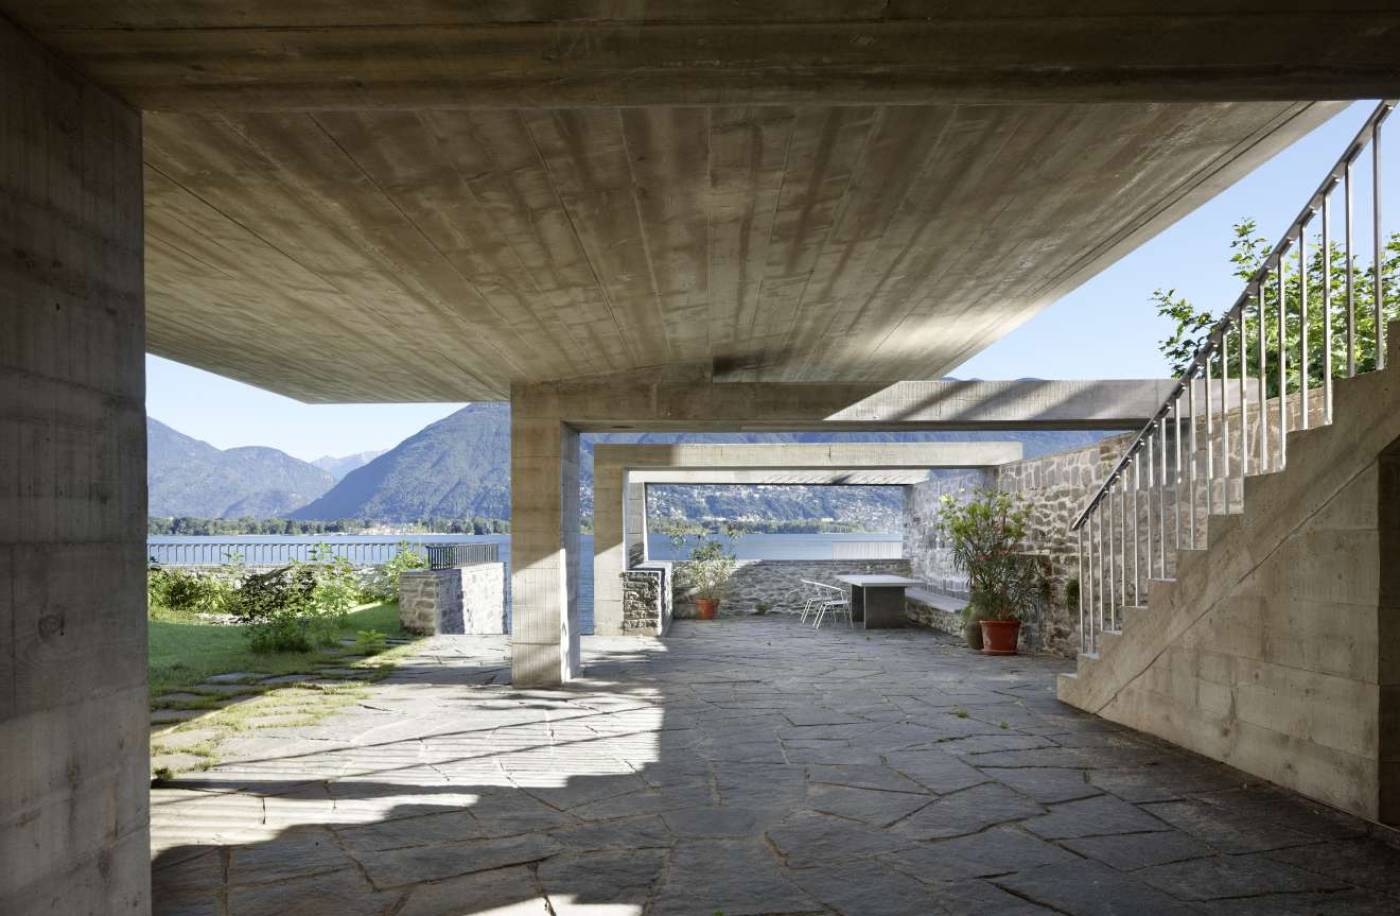 Casa monofamigliare, San Nazzaro, Projektierung, Ausschreibung und Realisierung:, Pfahlfundation, Tragstruktur in Massivbau